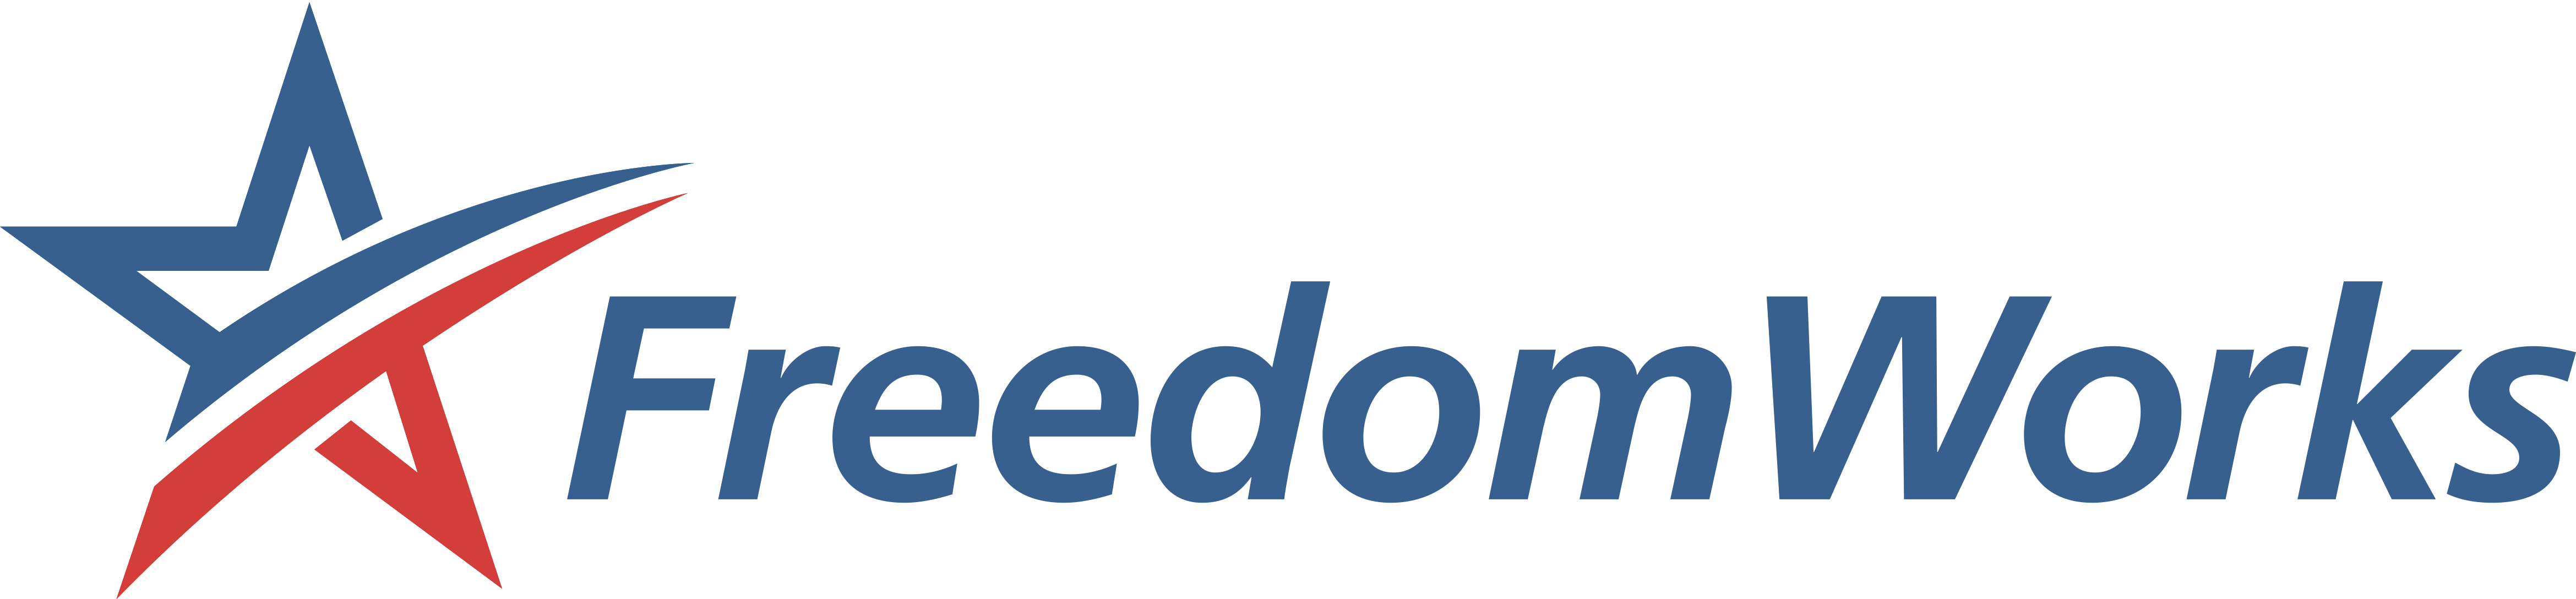 freedom works logo